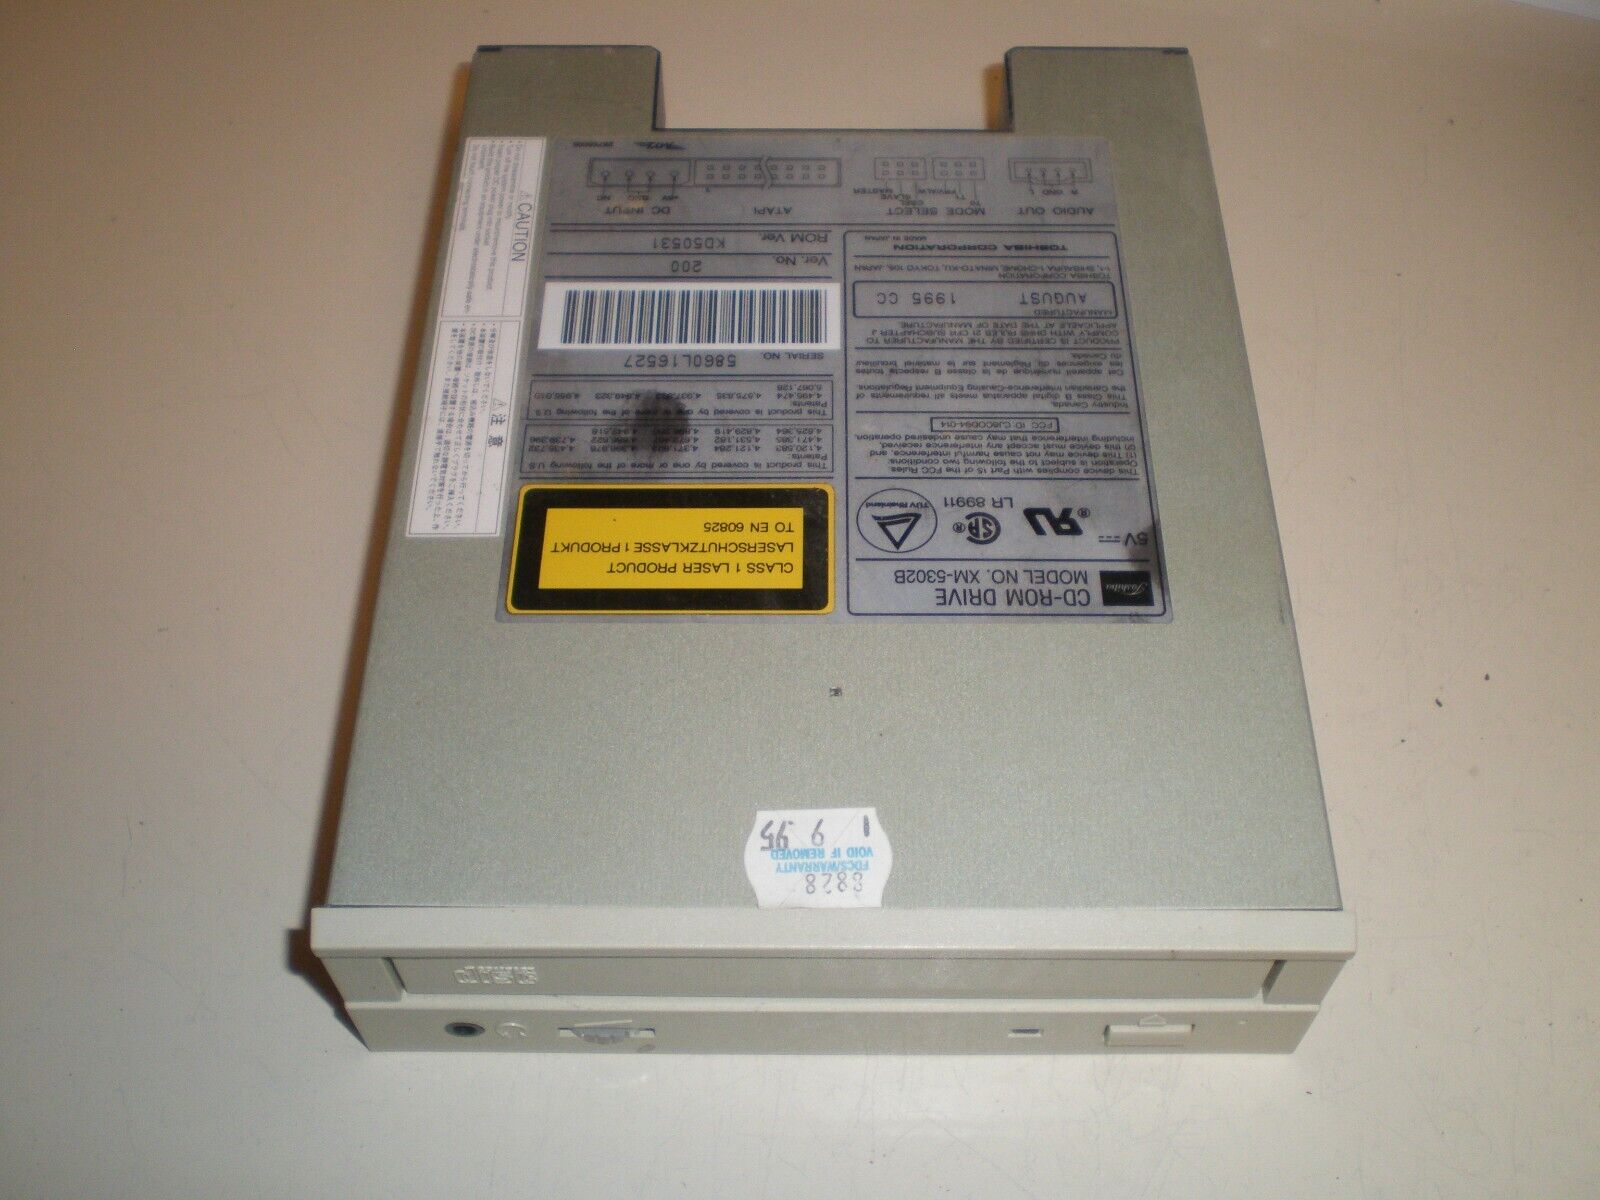 Vintage Toshiba CD-ROM Drive Model No. XM-5302B w/ 